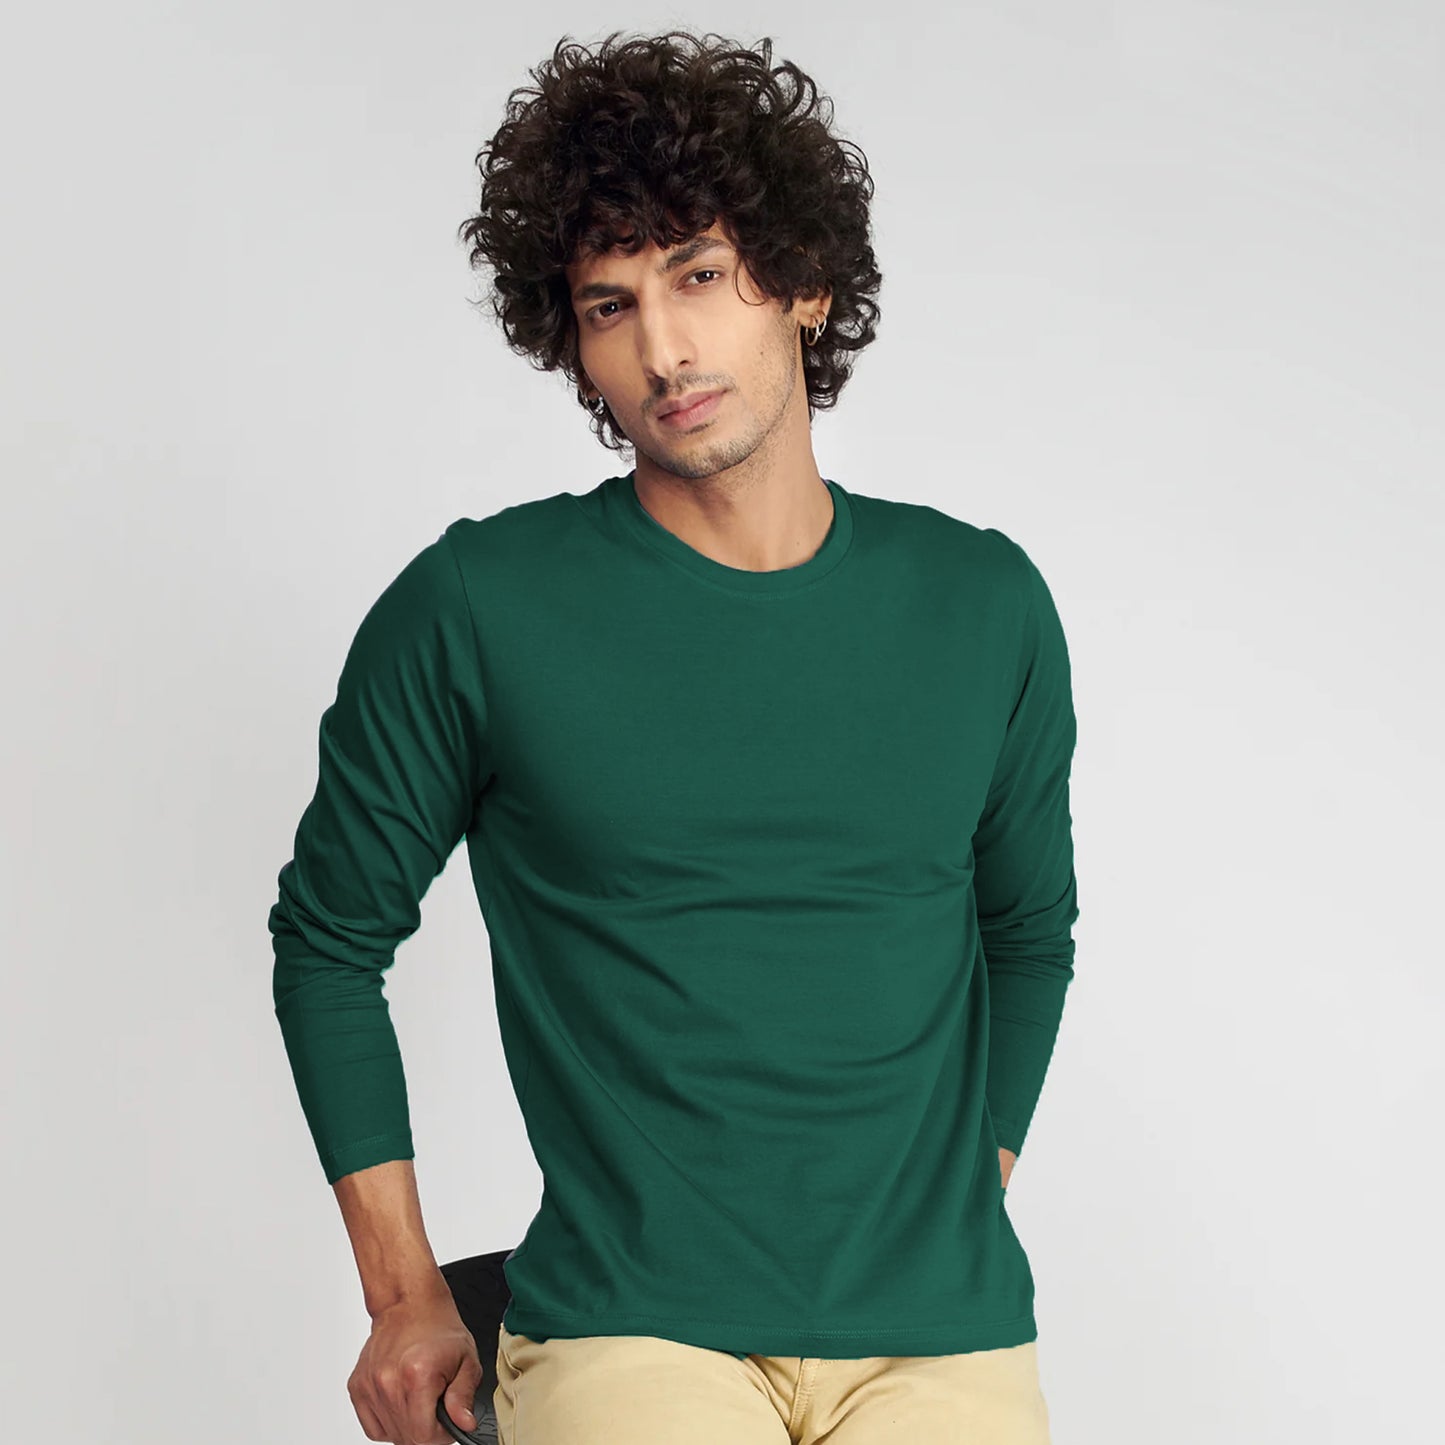 Basic Olive Green Full Sleeves T-Shirt